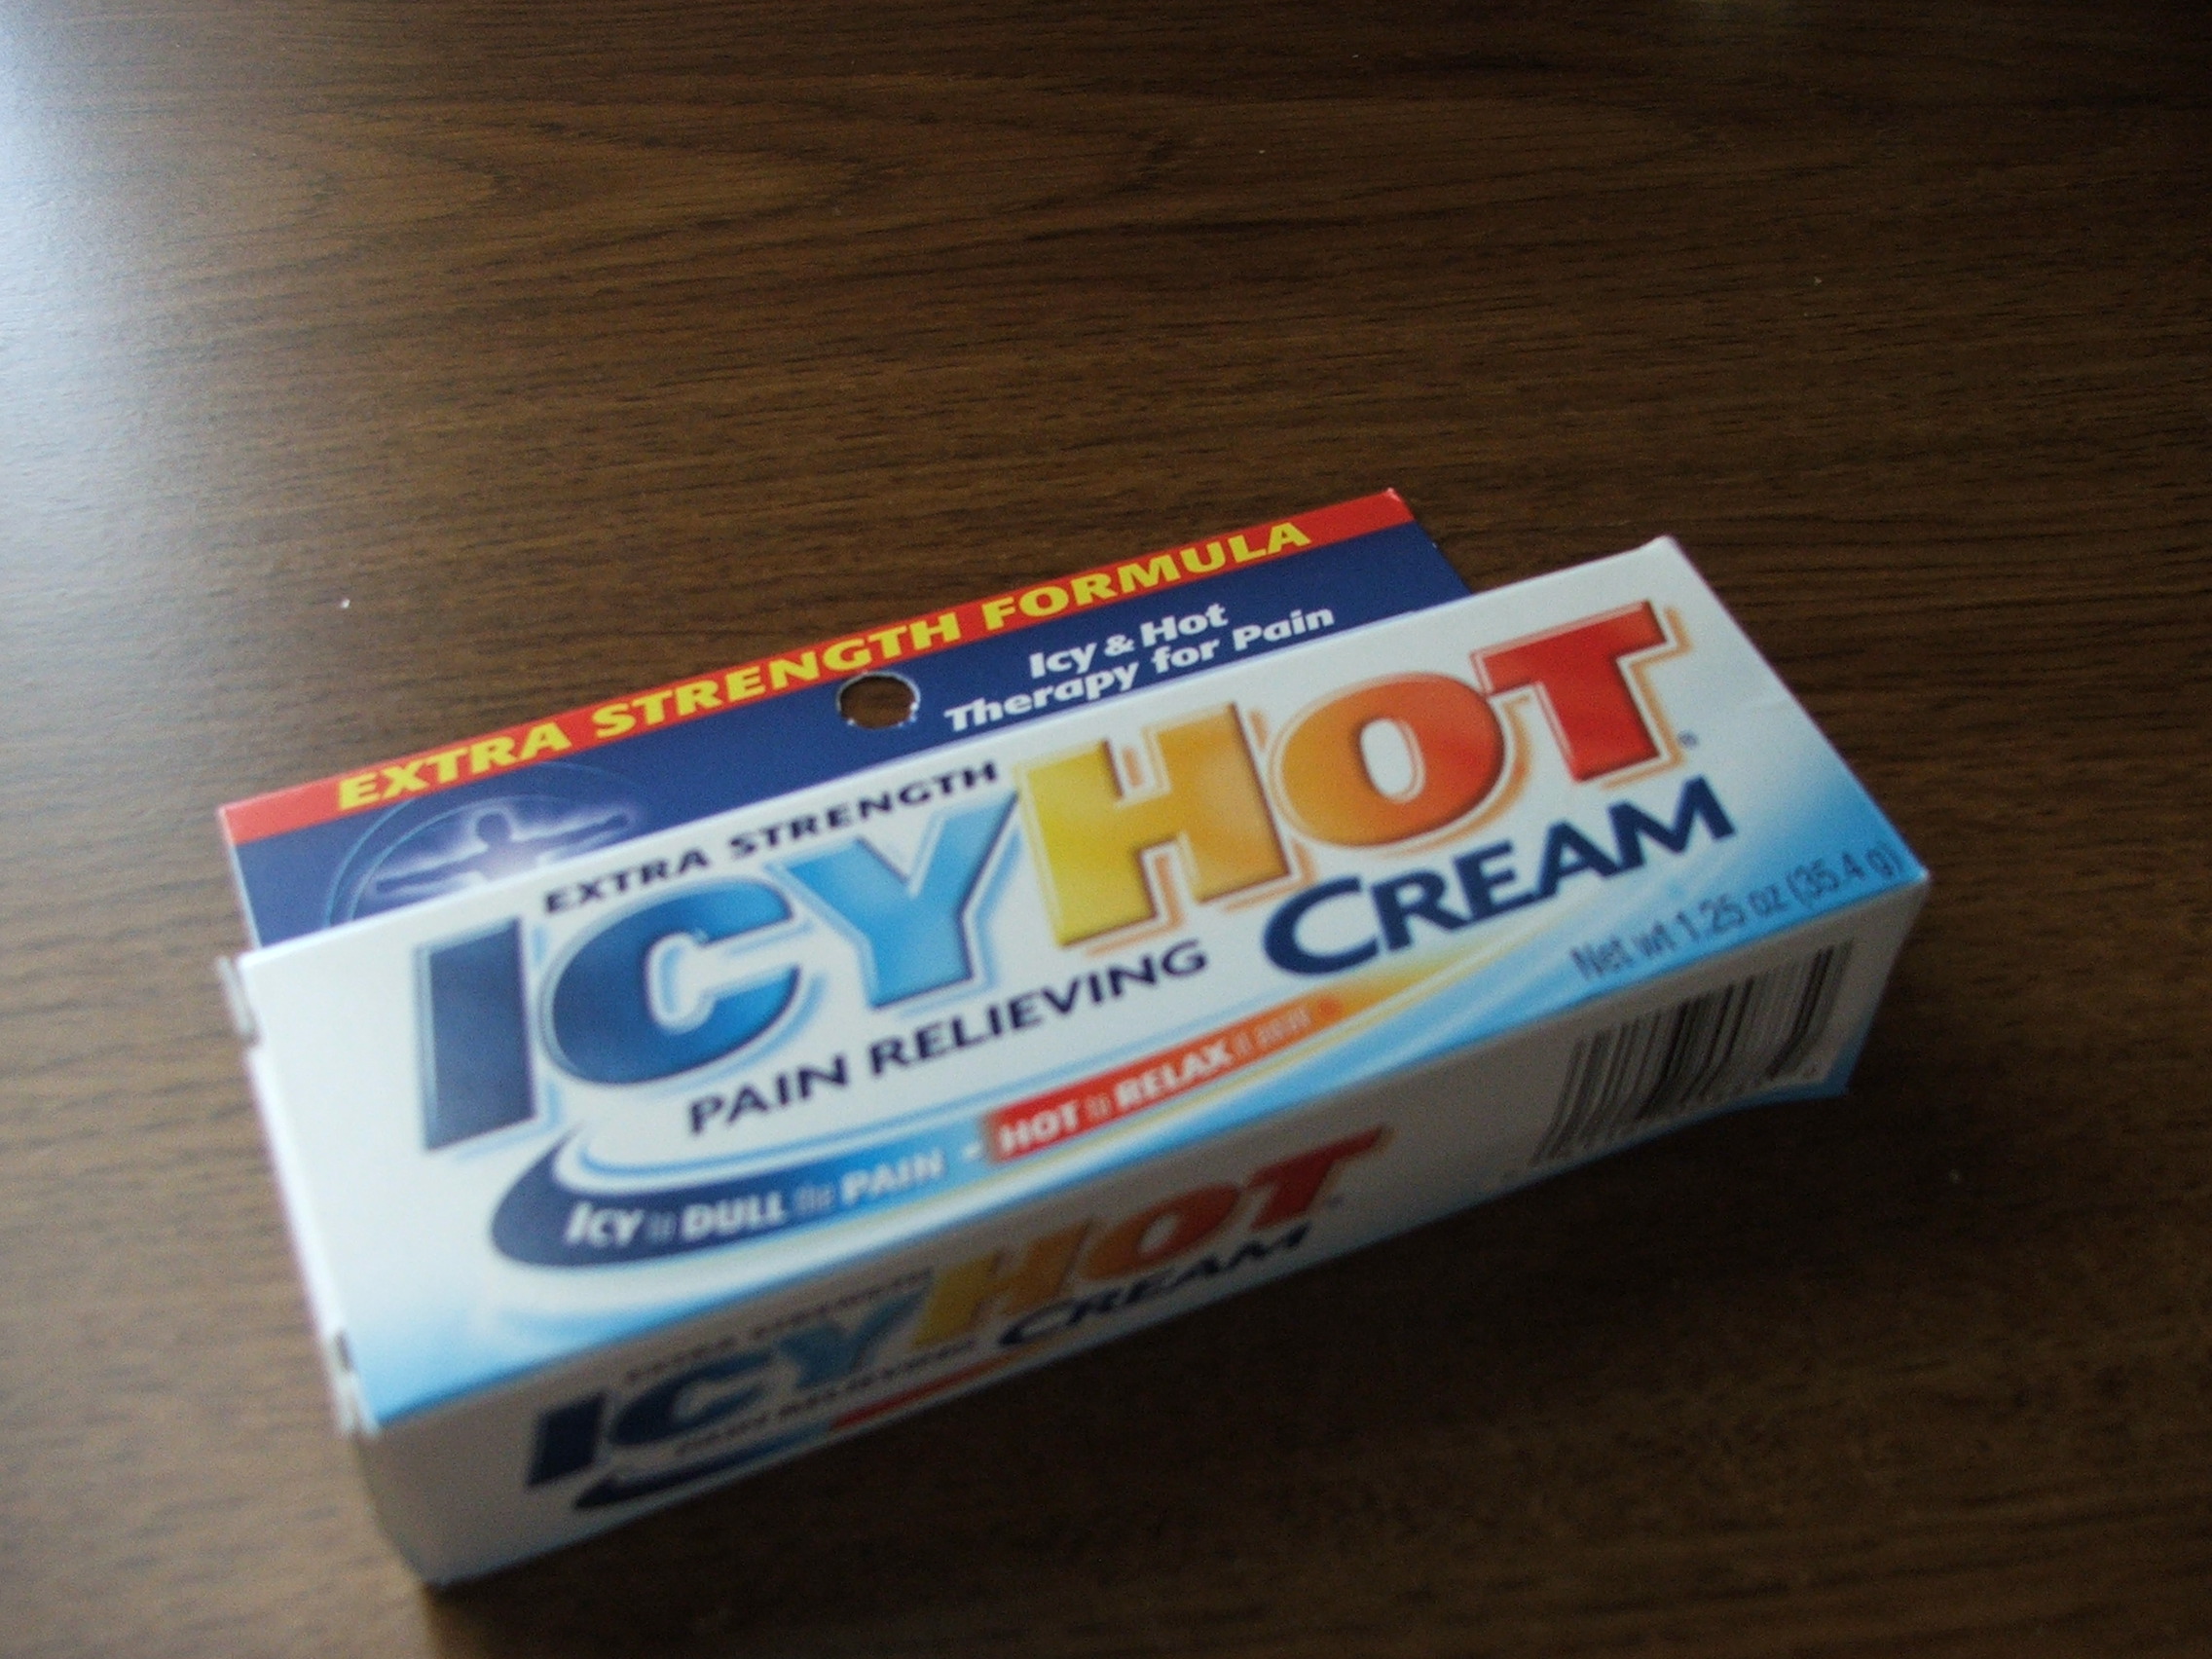 Icy Hot Cream Burns